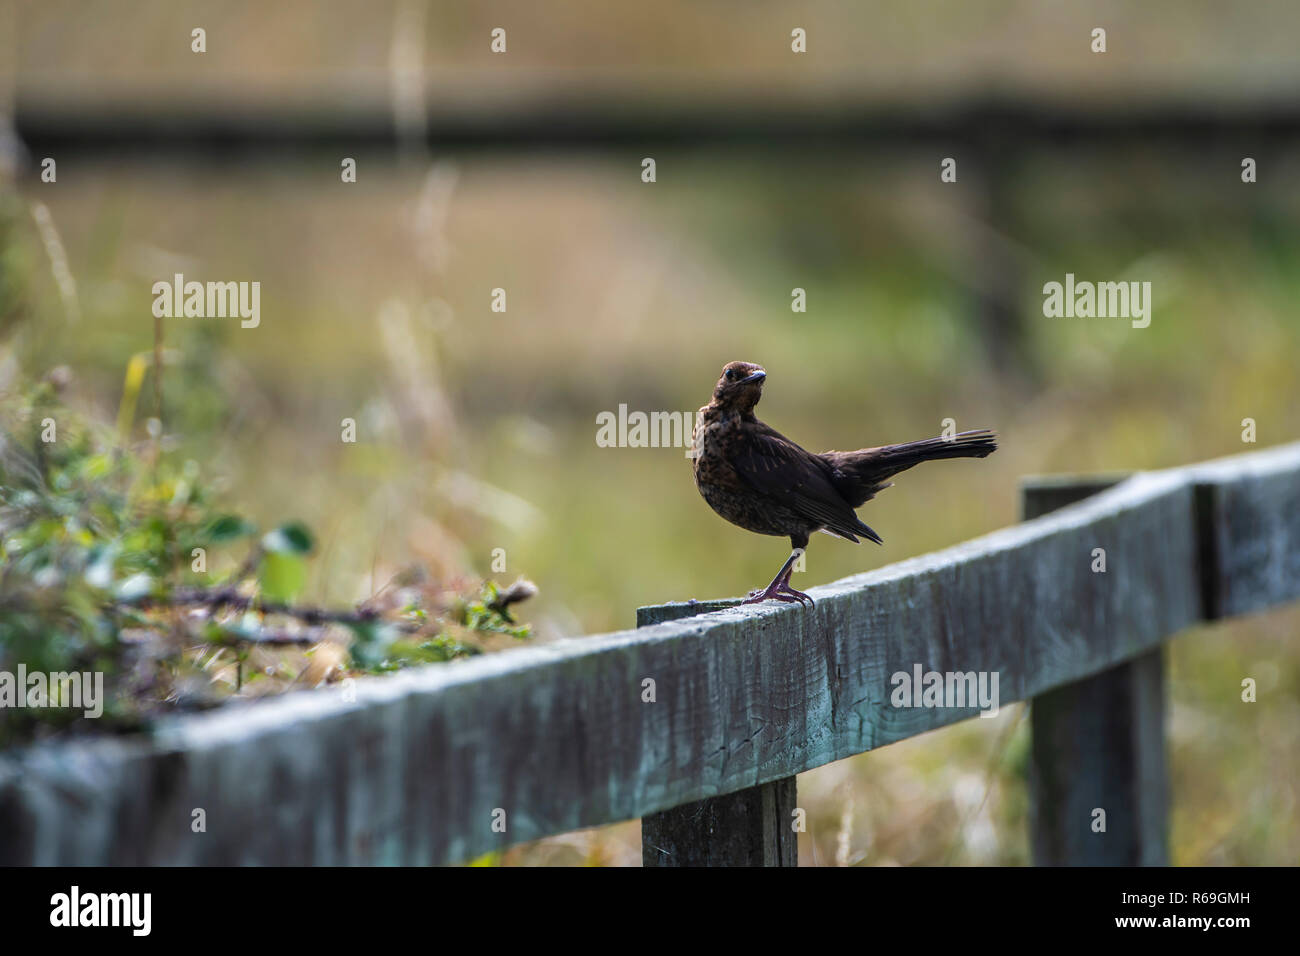 Juvenile Blackbird posing on a wooden fence. Stock Photo